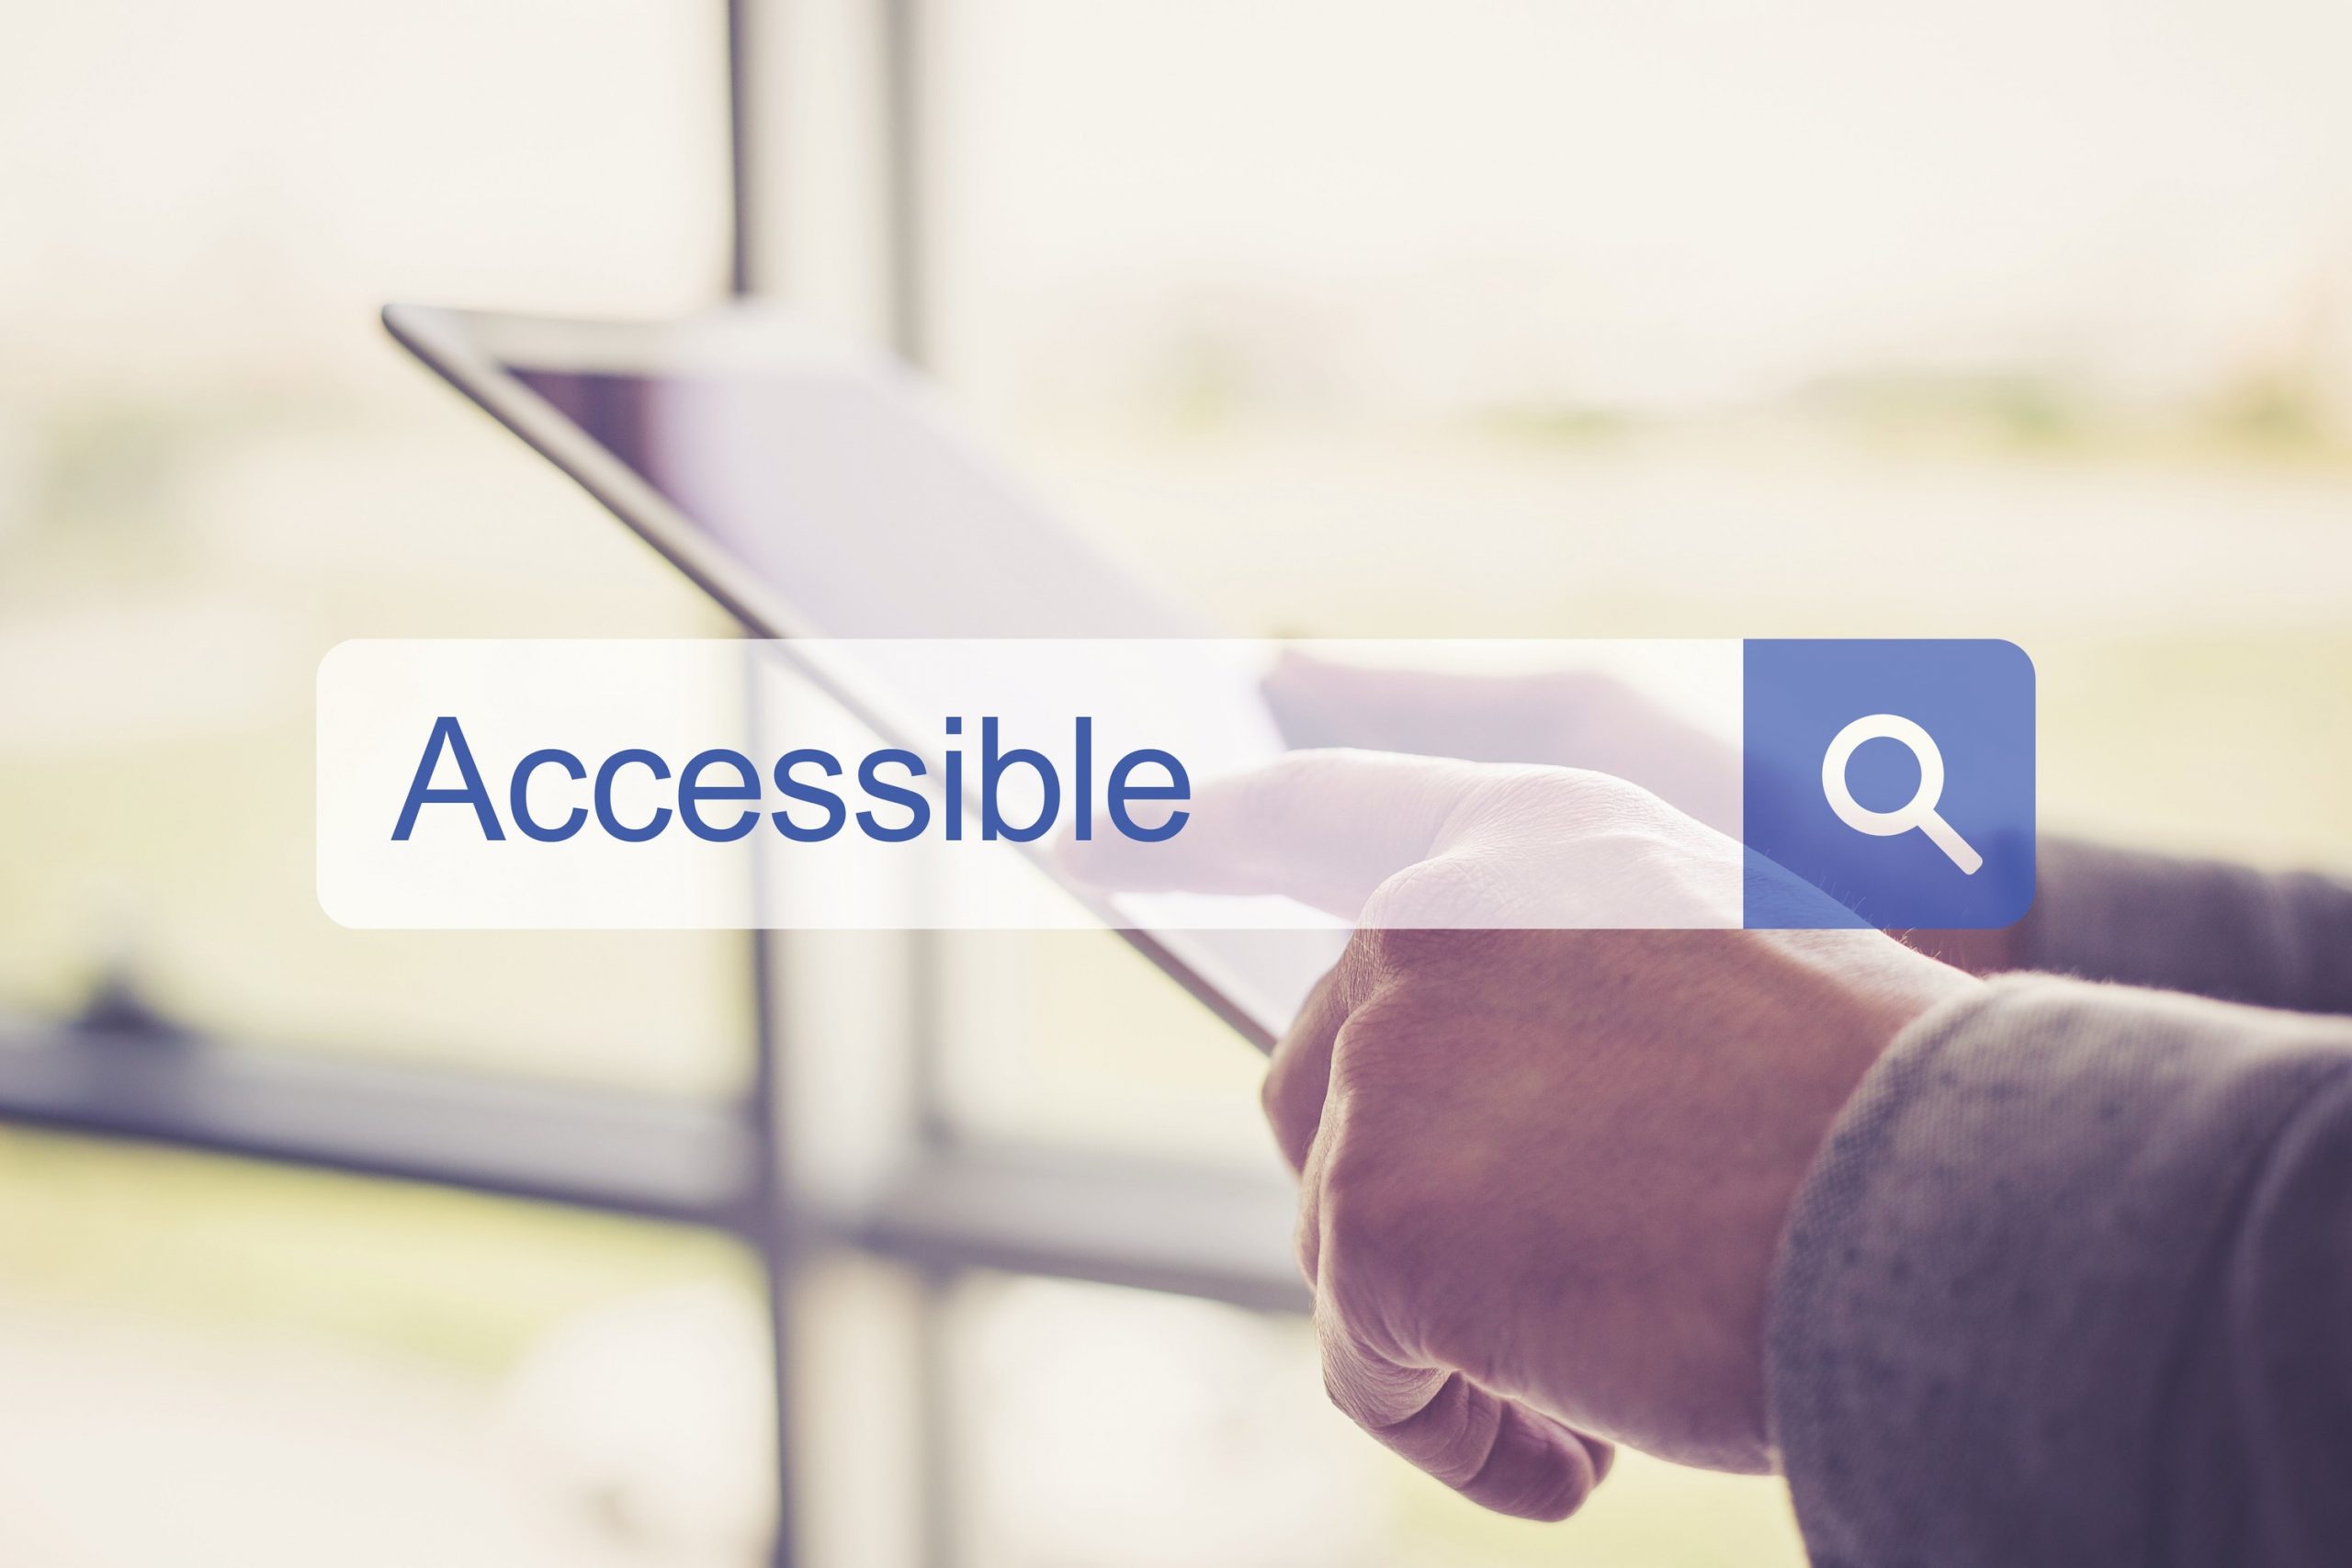 Boîte de recherche avec le mot "accessible" en anglais, en arrière-plan nous voyons des mains interagissant avec une tablette électronique.